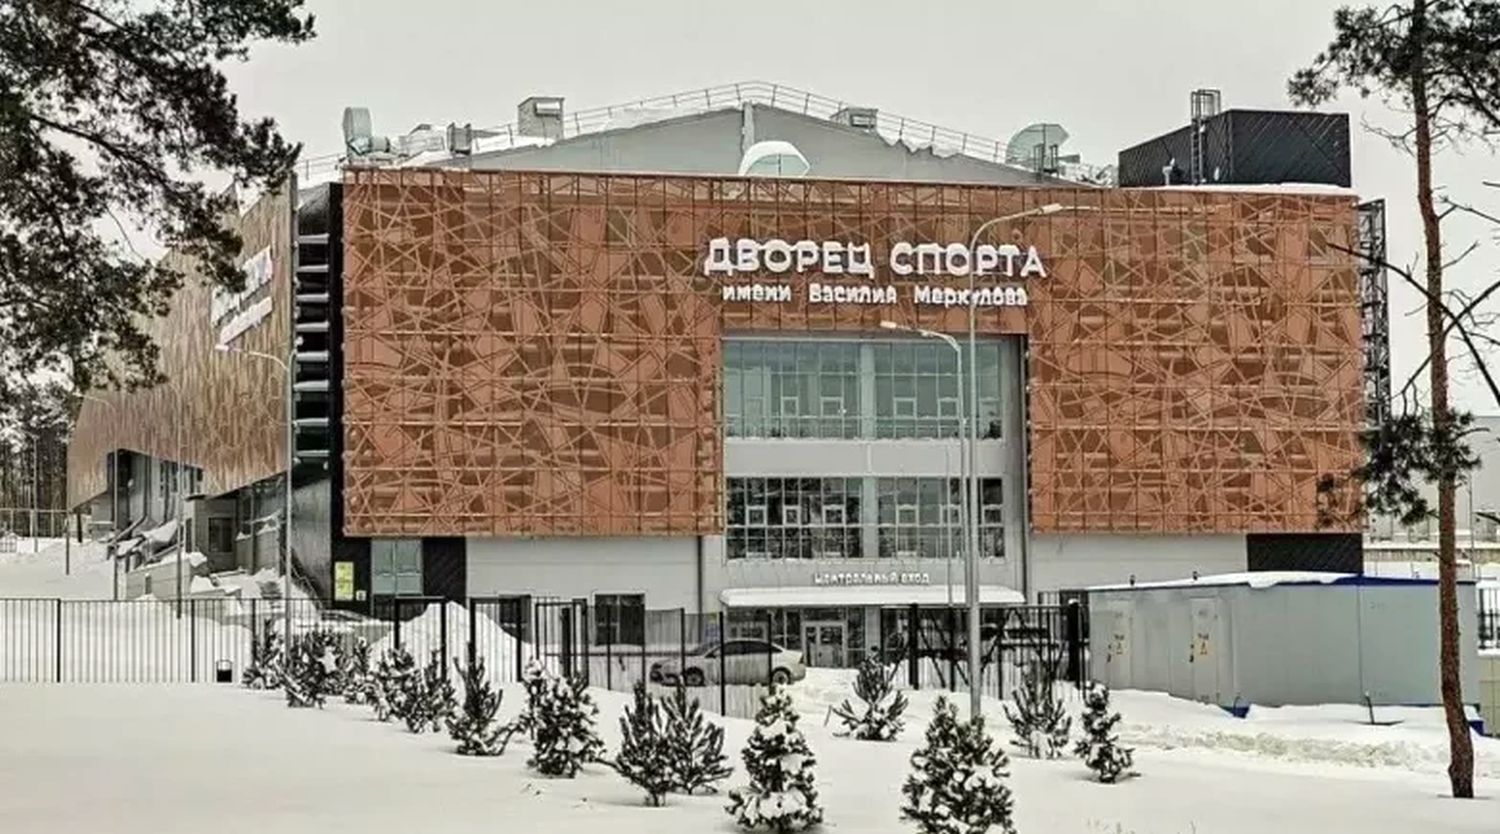 Борцовский спорткомплекс открылся в Воронеже